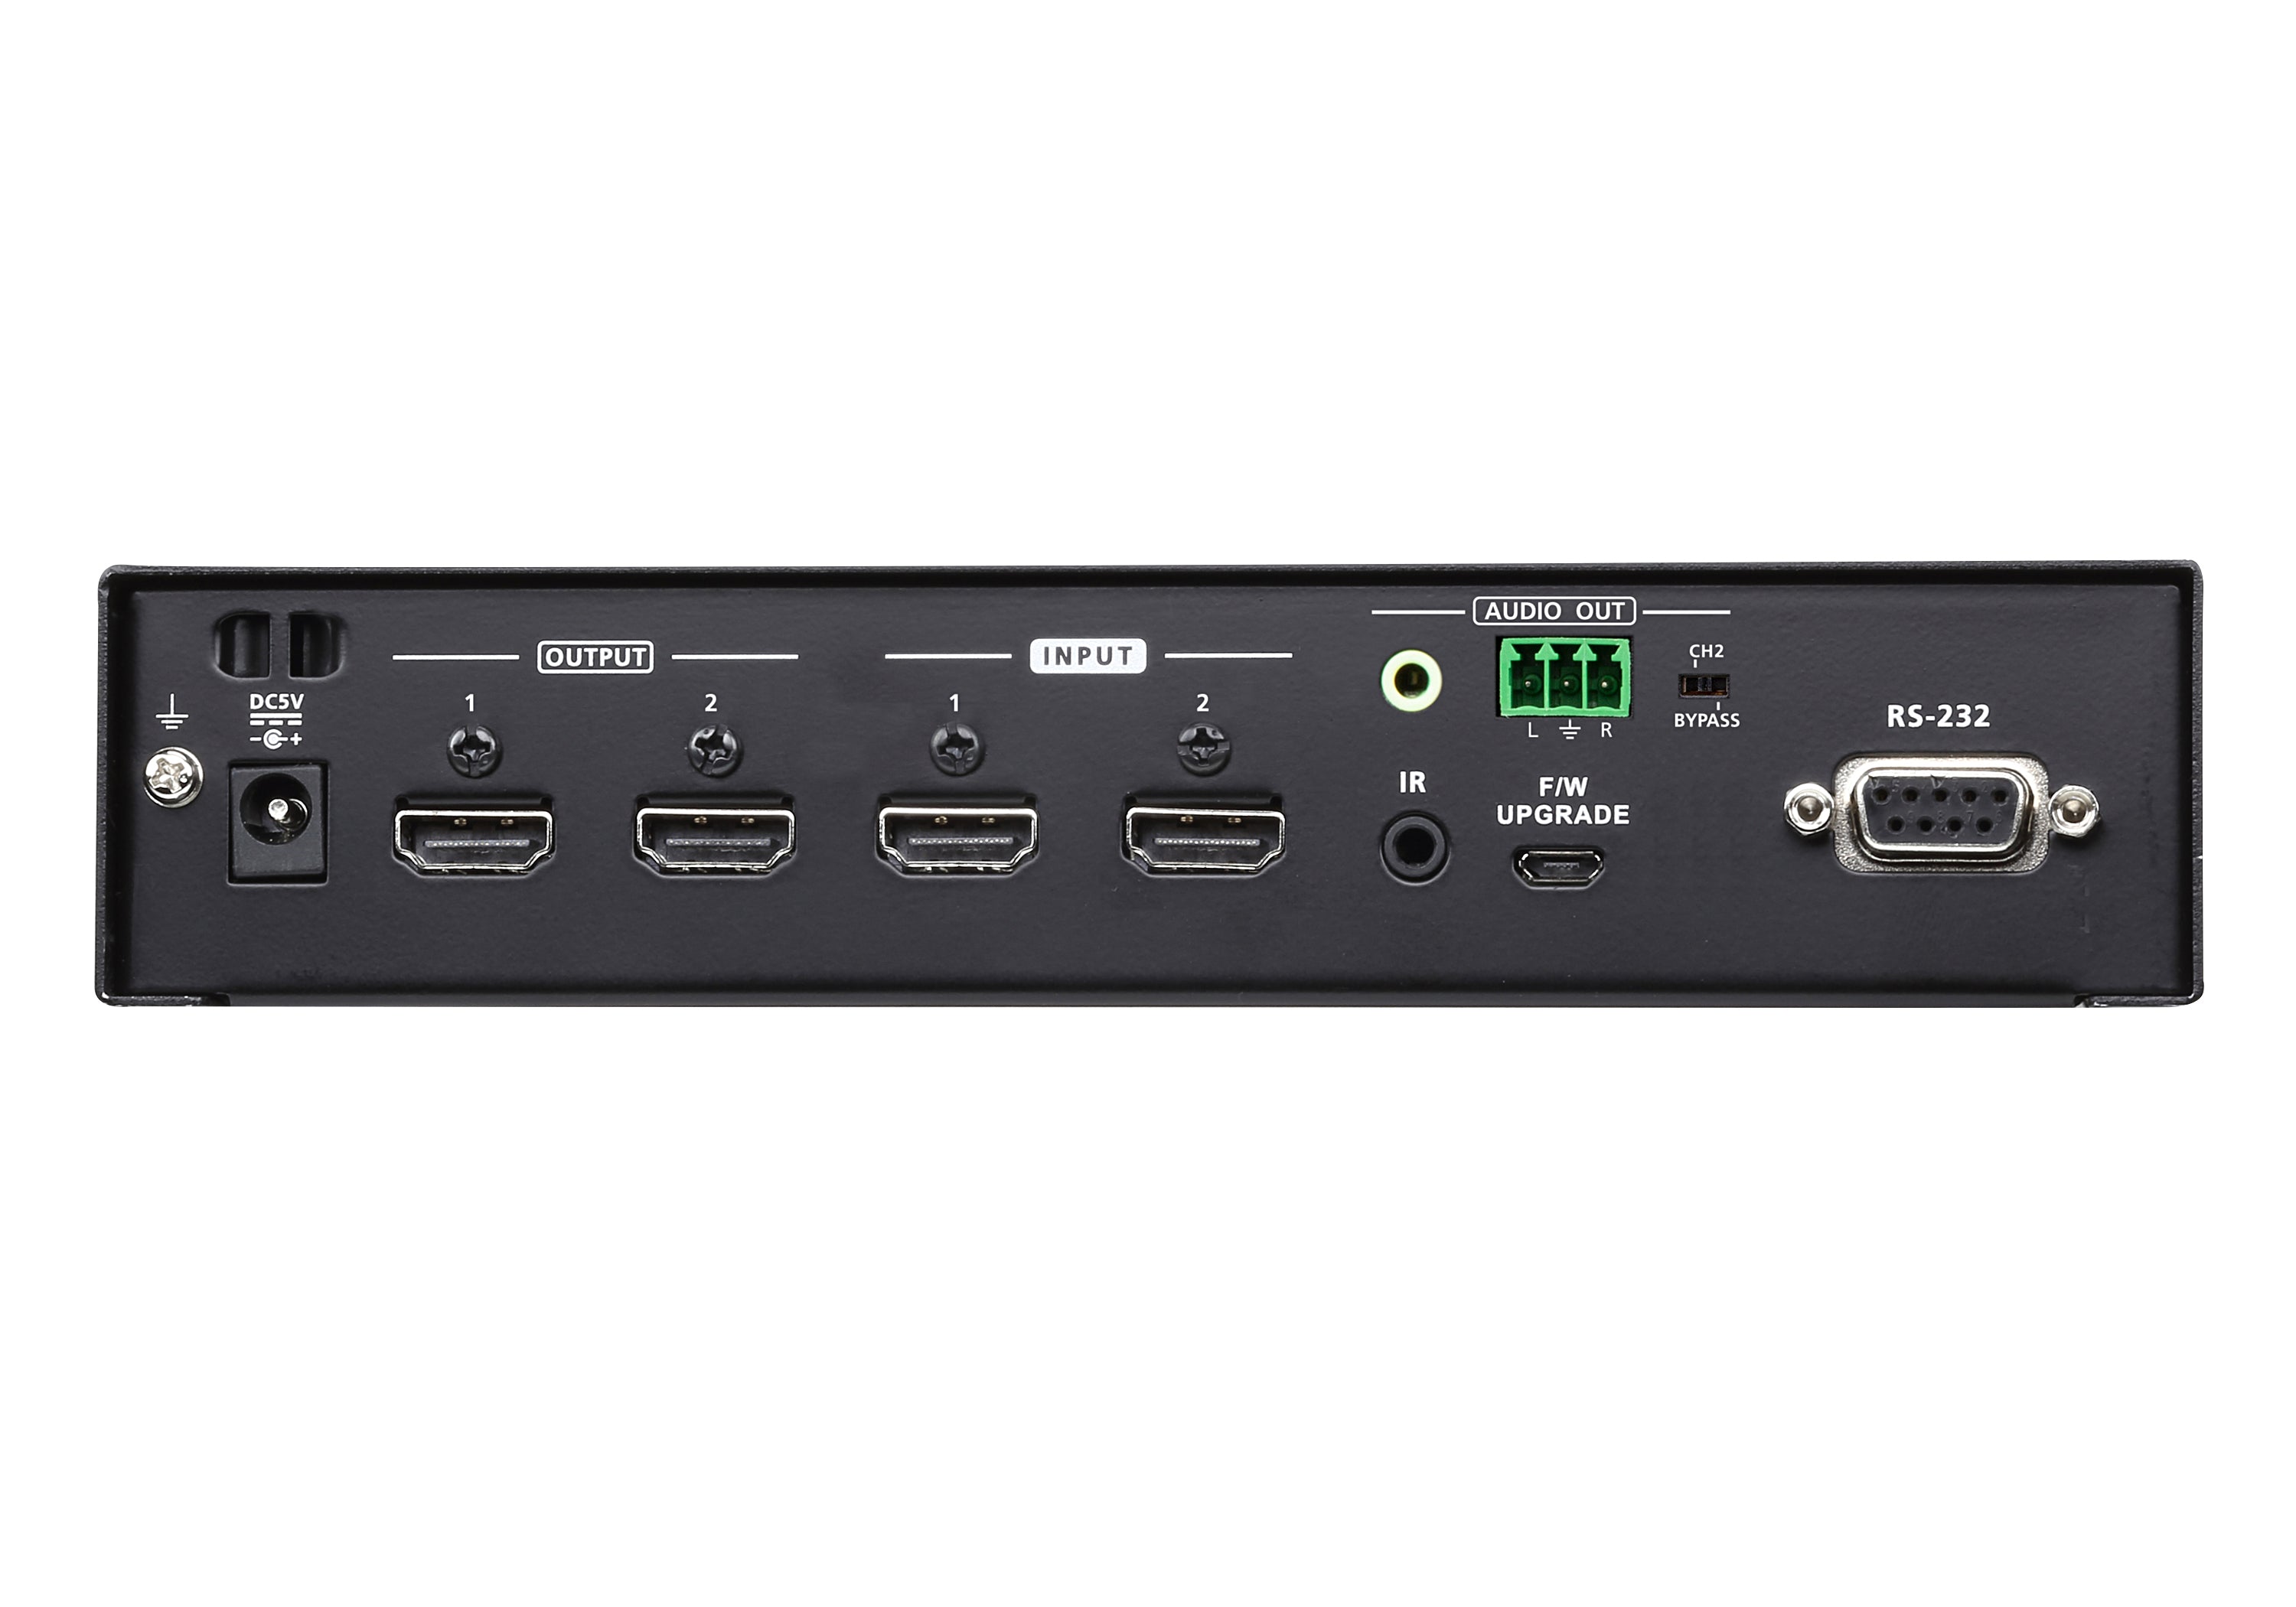 Aten 2 x 2 True 4K HDMI Matrix Switch with Audio De-Embedder -VM0202HB (3 Year Manufacture Local Warranty In Singapore)